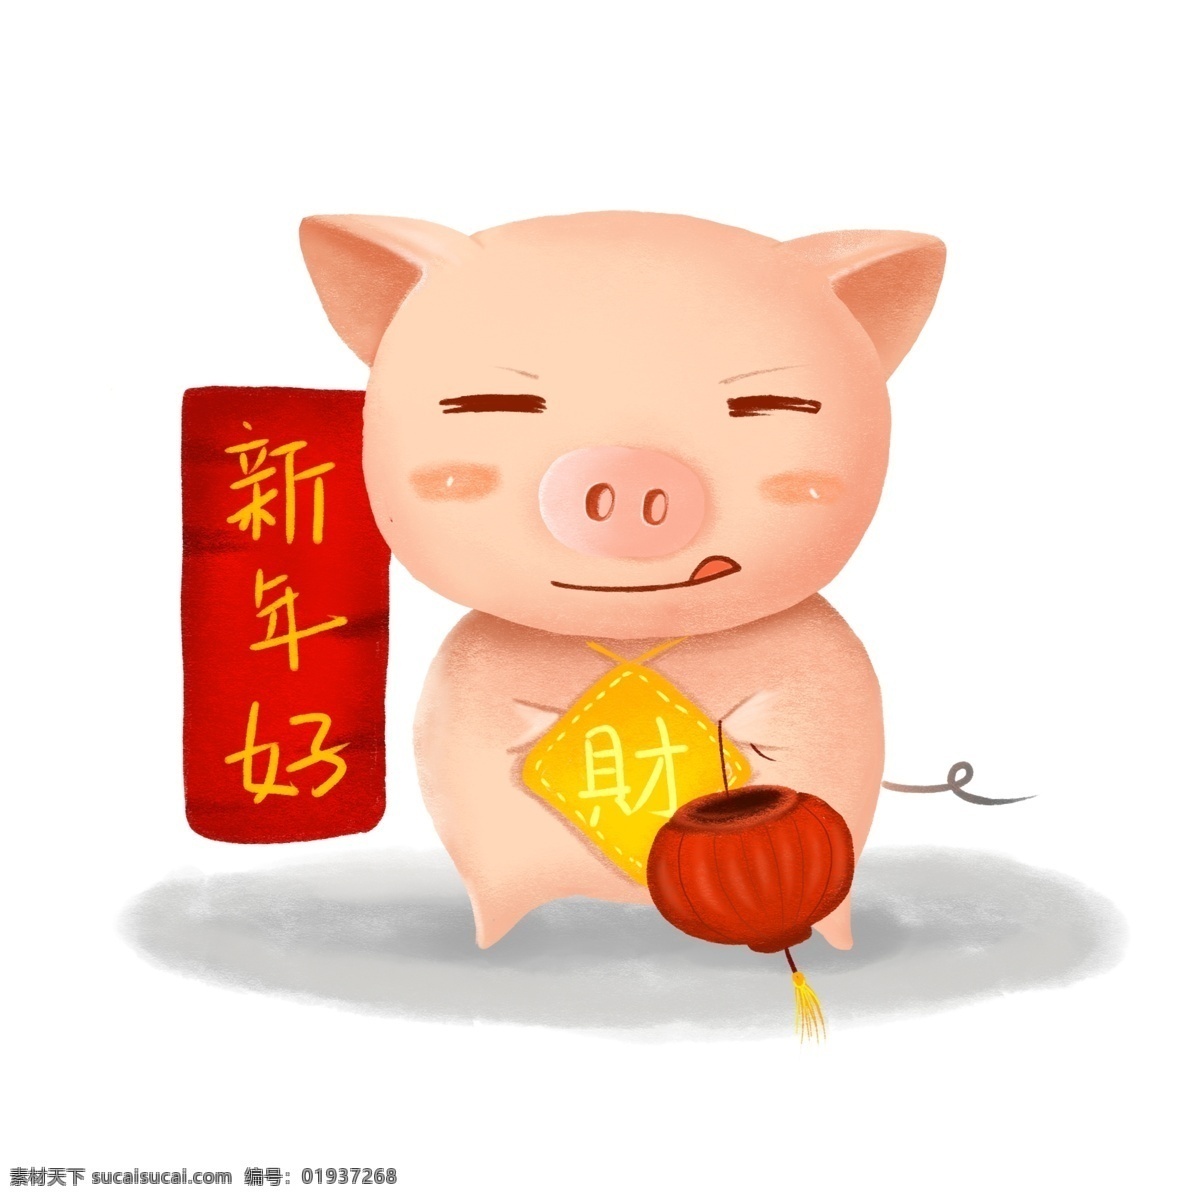 手绘 新年 好 拜年 猪 财 灯笼 卡通猪 新年好 红色灯笼 发财猪 可爱猪 手绘猪 萌猪